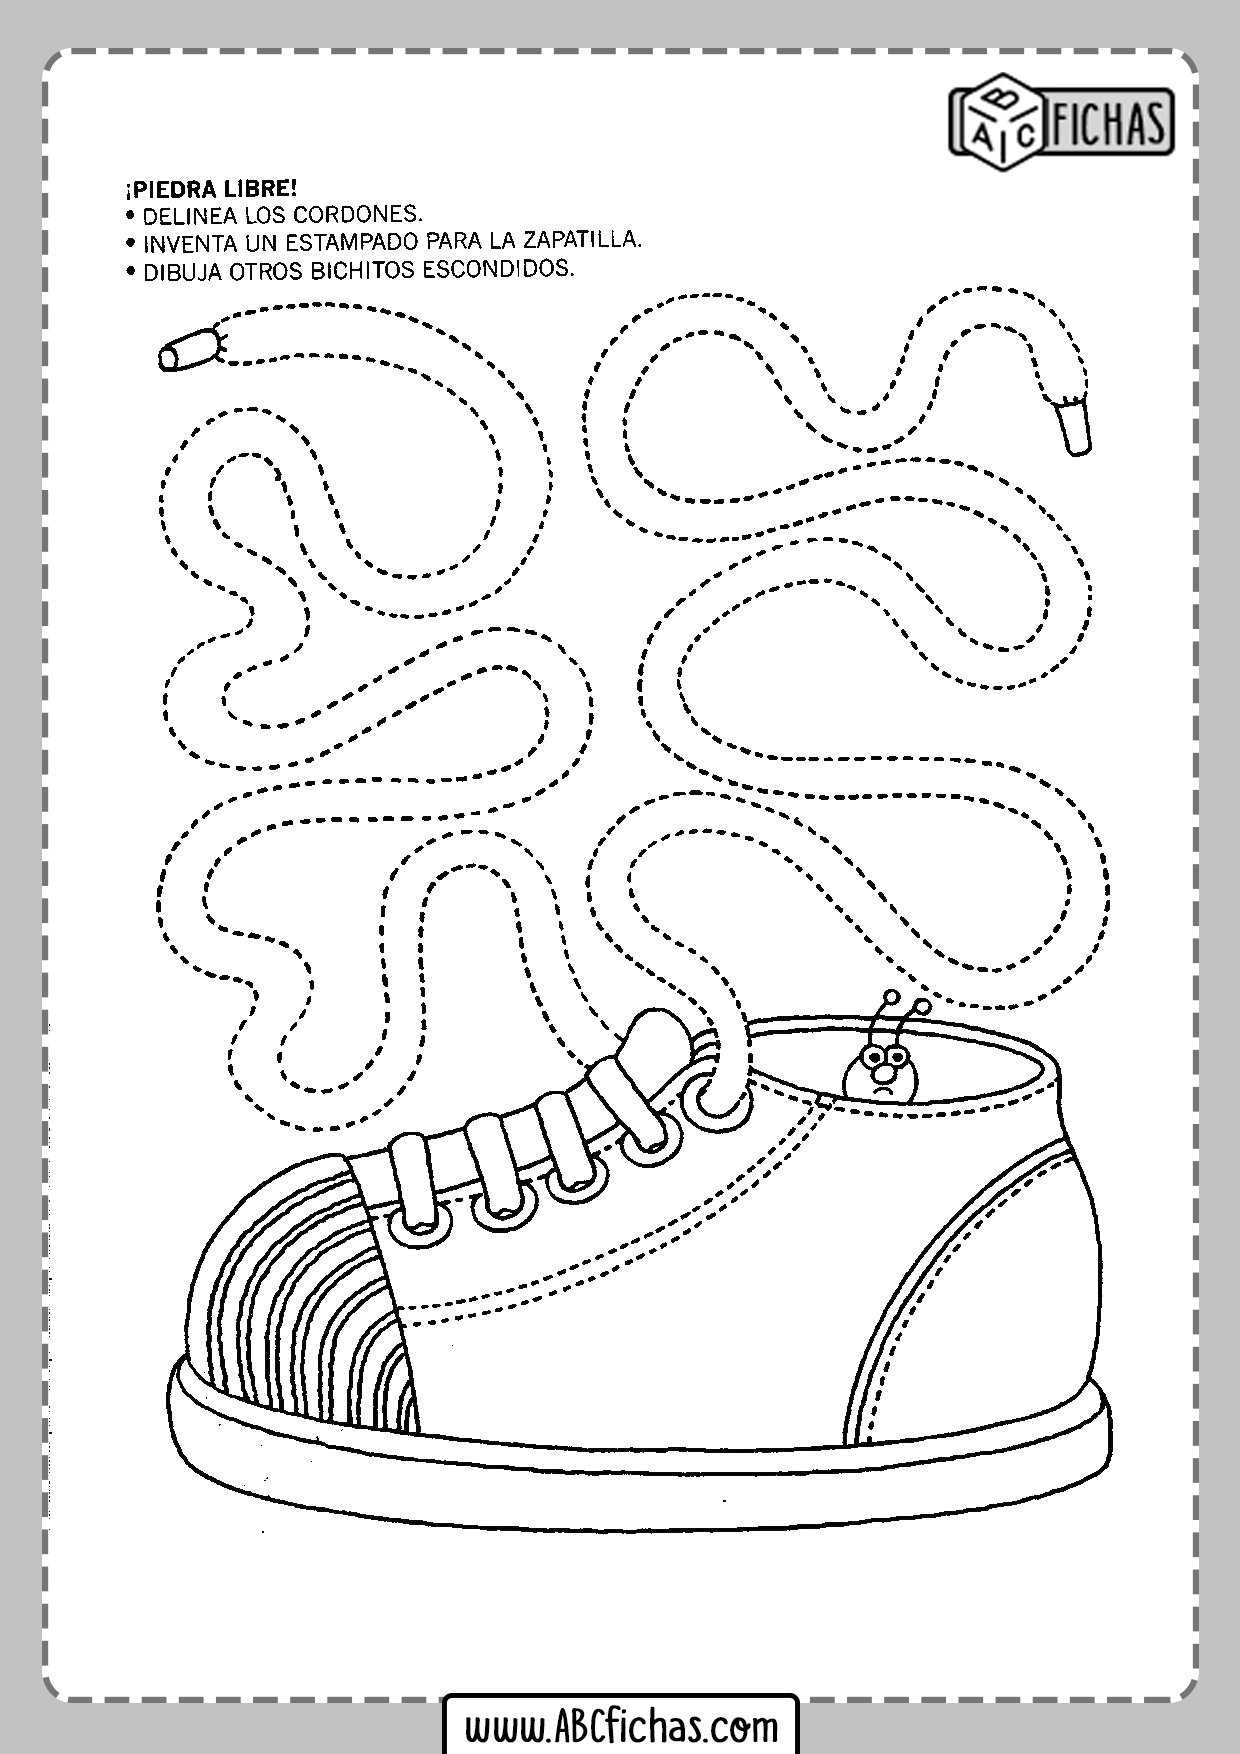 Раскраска моторика. Обувь задания для дошкольников. Обувь занятия задания для дошкольников. Обувь задания для детей 4-5 лет. Мелкая моторика для детей задания.